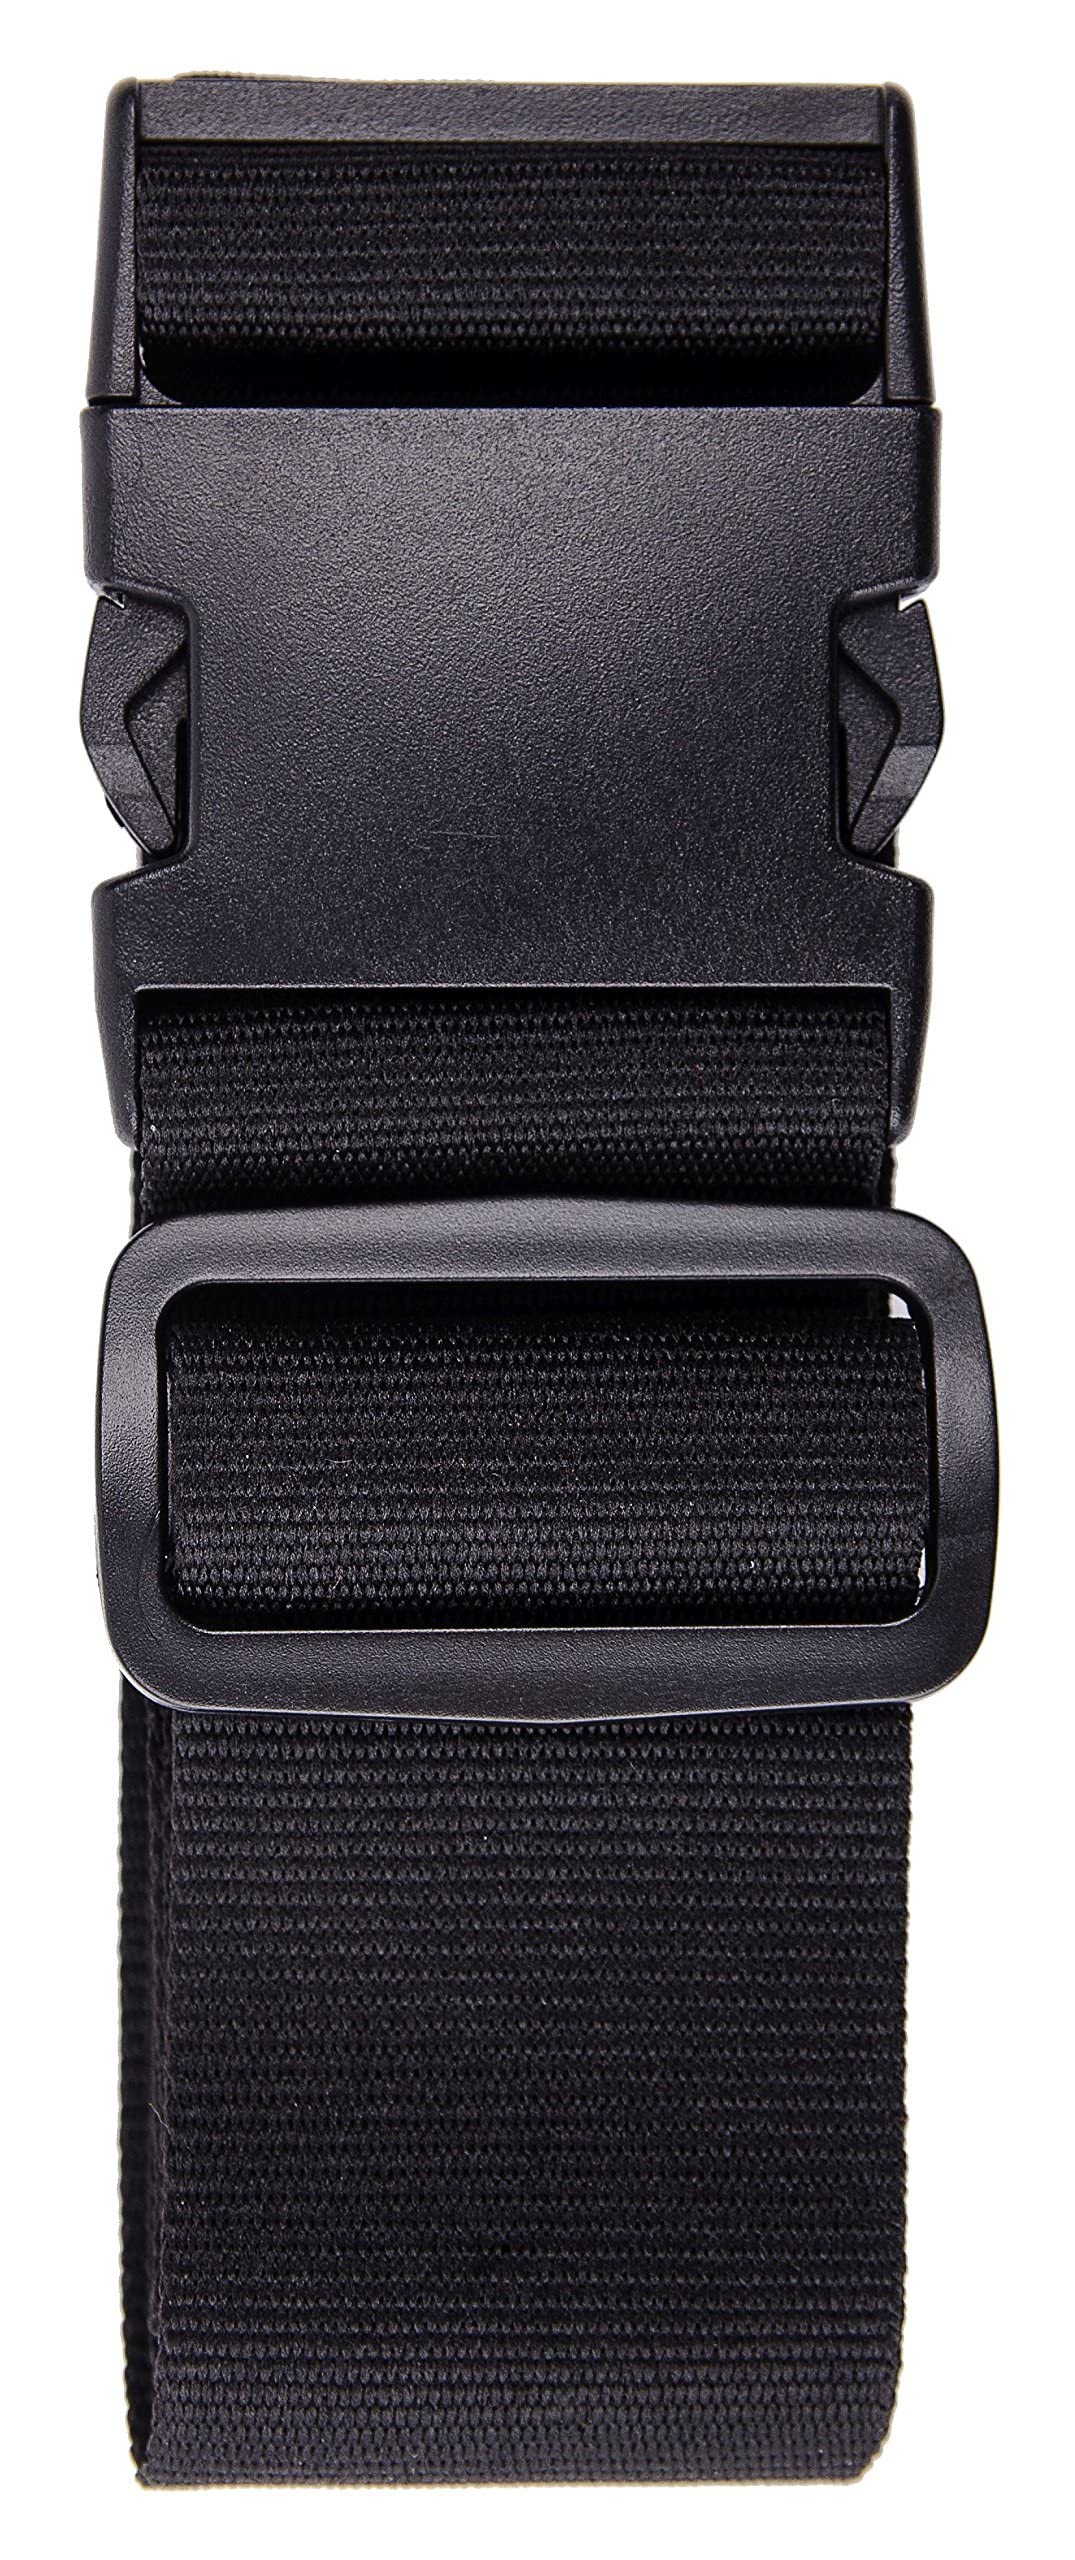 Karteo Kofferband schwarz Koffergurt [1 Stück] Reisegurt für Koffer und Taschen als Gepäckgurte 5 cm Polyester Gurt bis 155 cm Länge verstellbar von Karteo